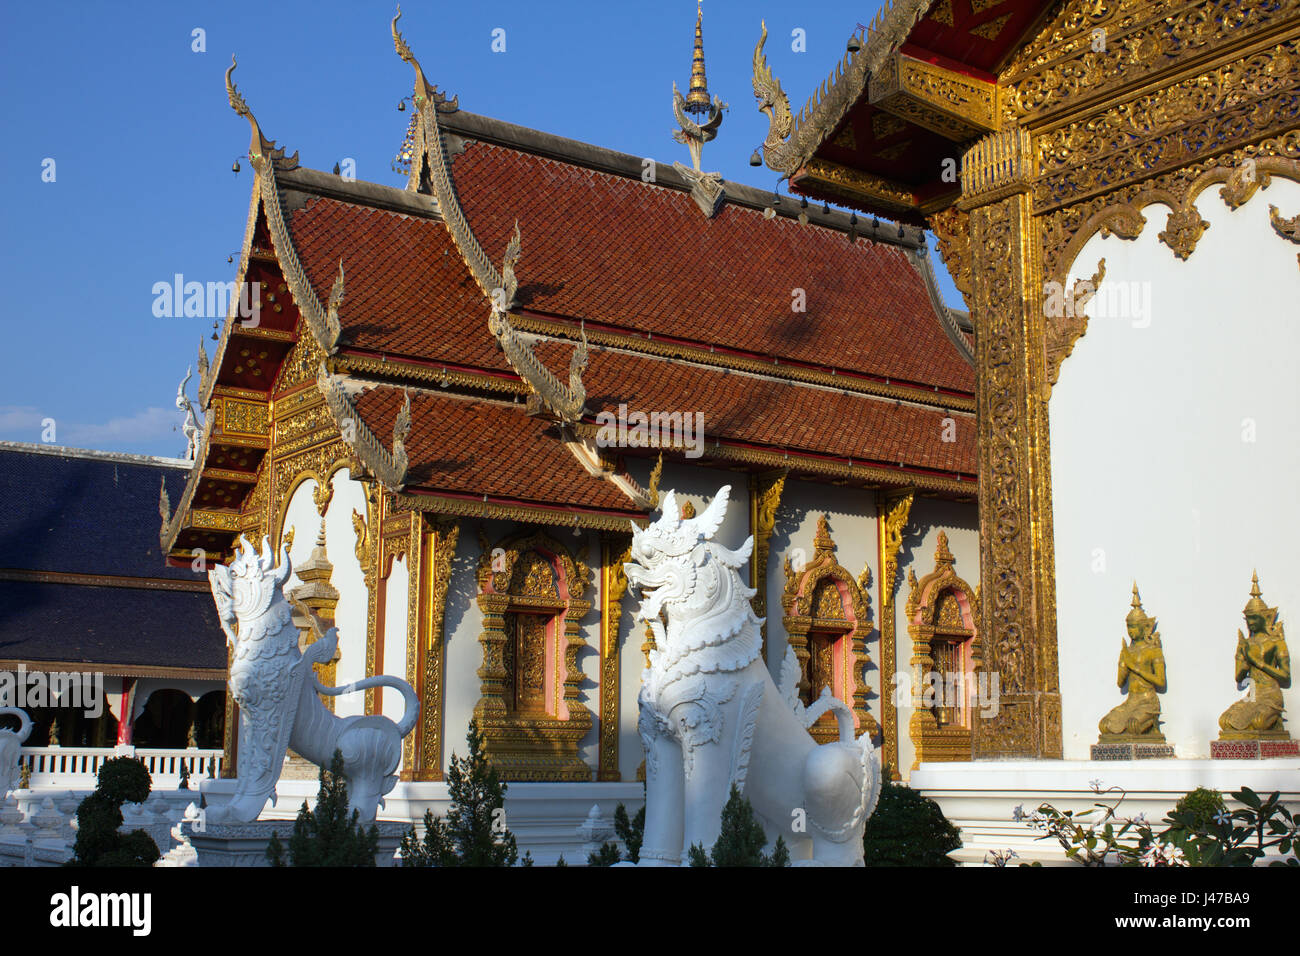 Chiffres lion mythique Singha au temple bouddhiste de Wat Ban Den, Mae Taeng, Chiang Mai, Thaïlande Banque D'Images